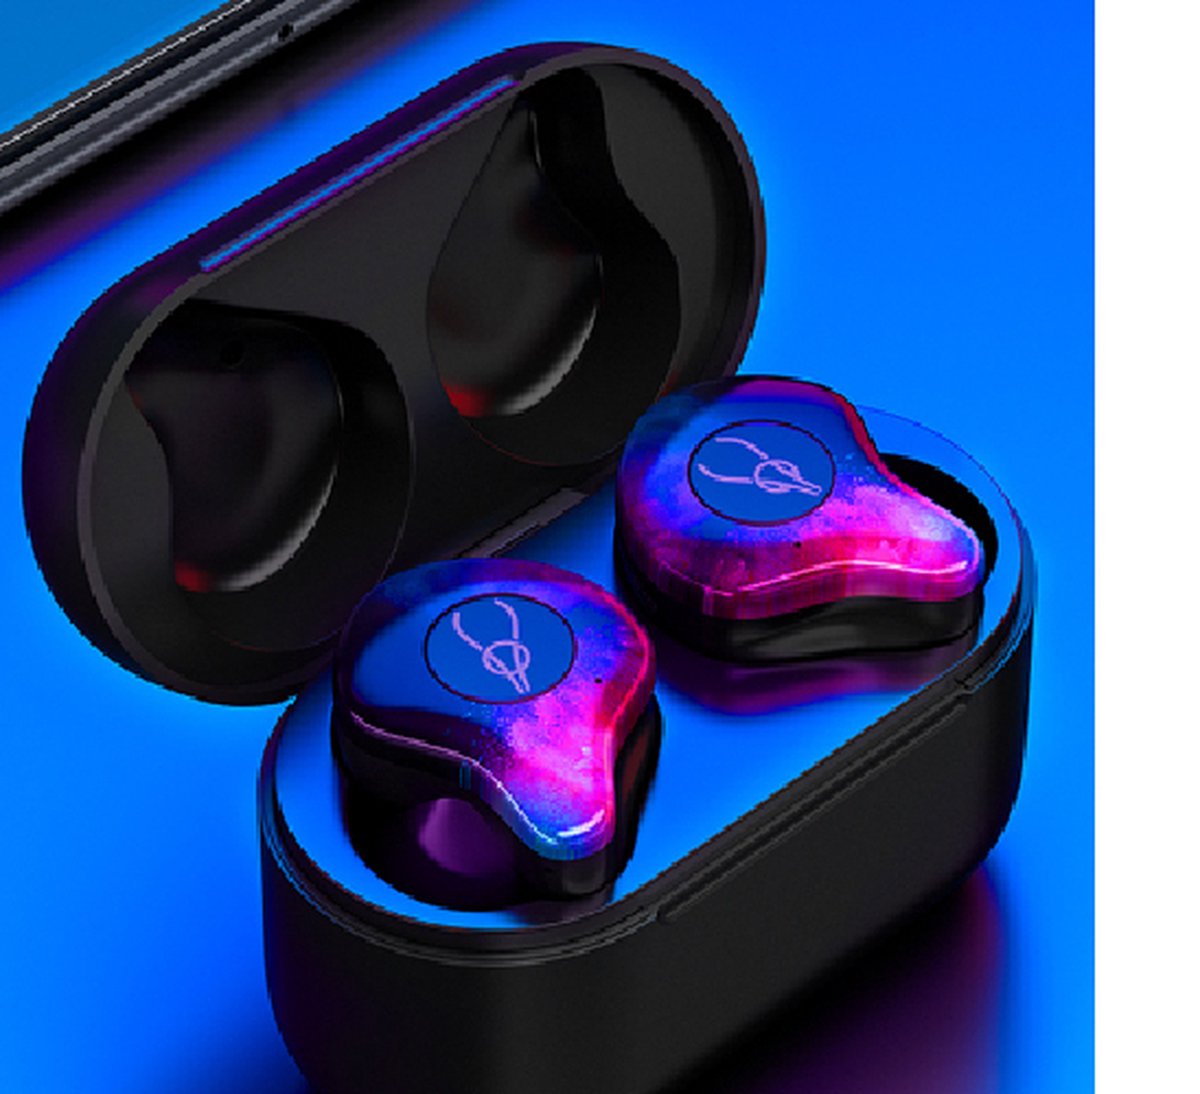 Sabbat X12 Pro Draadloze Oordopjes - Bluetooth 5.2 Headset - Bluetooth Oordopjes - Oortjes Draadloos - Draadloos Oordopjes - High Quality - 24 Uur Speeltijd - Flame